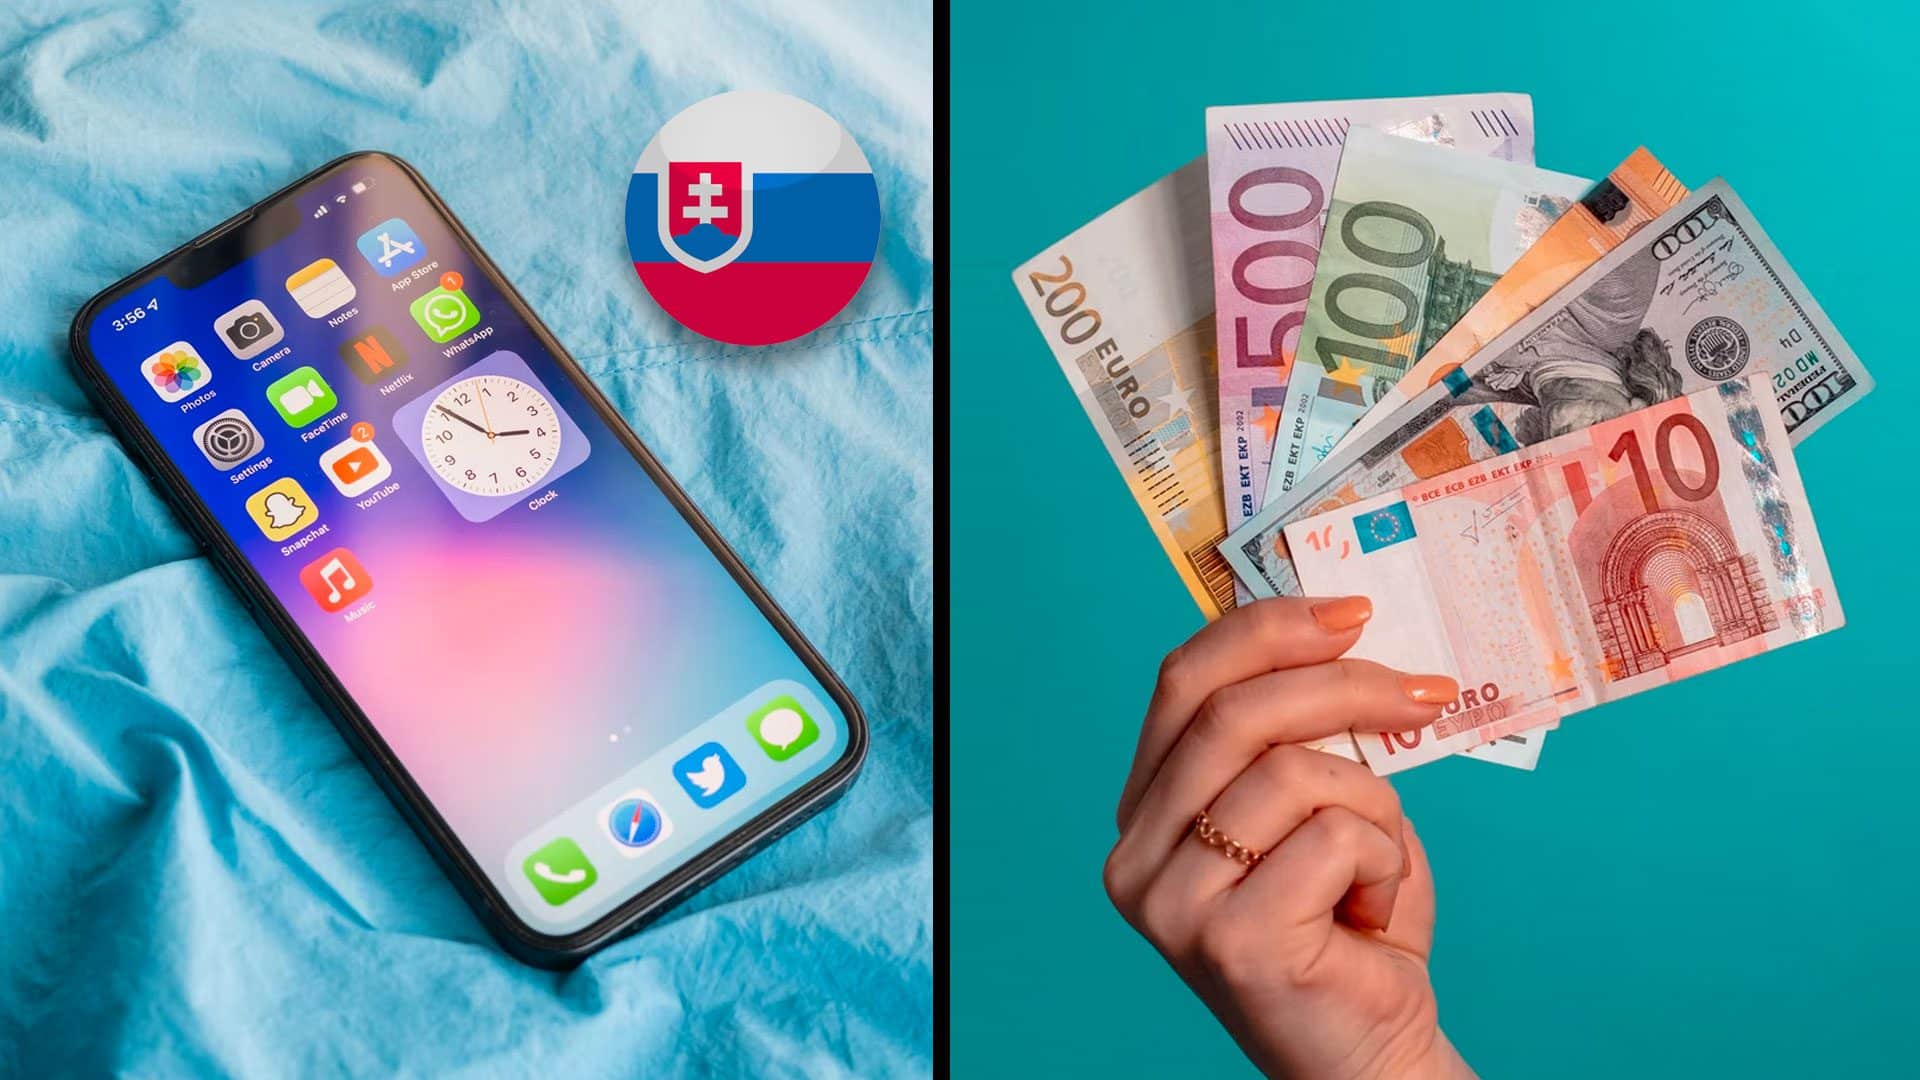 Mobilné dáta na Slovensku cena